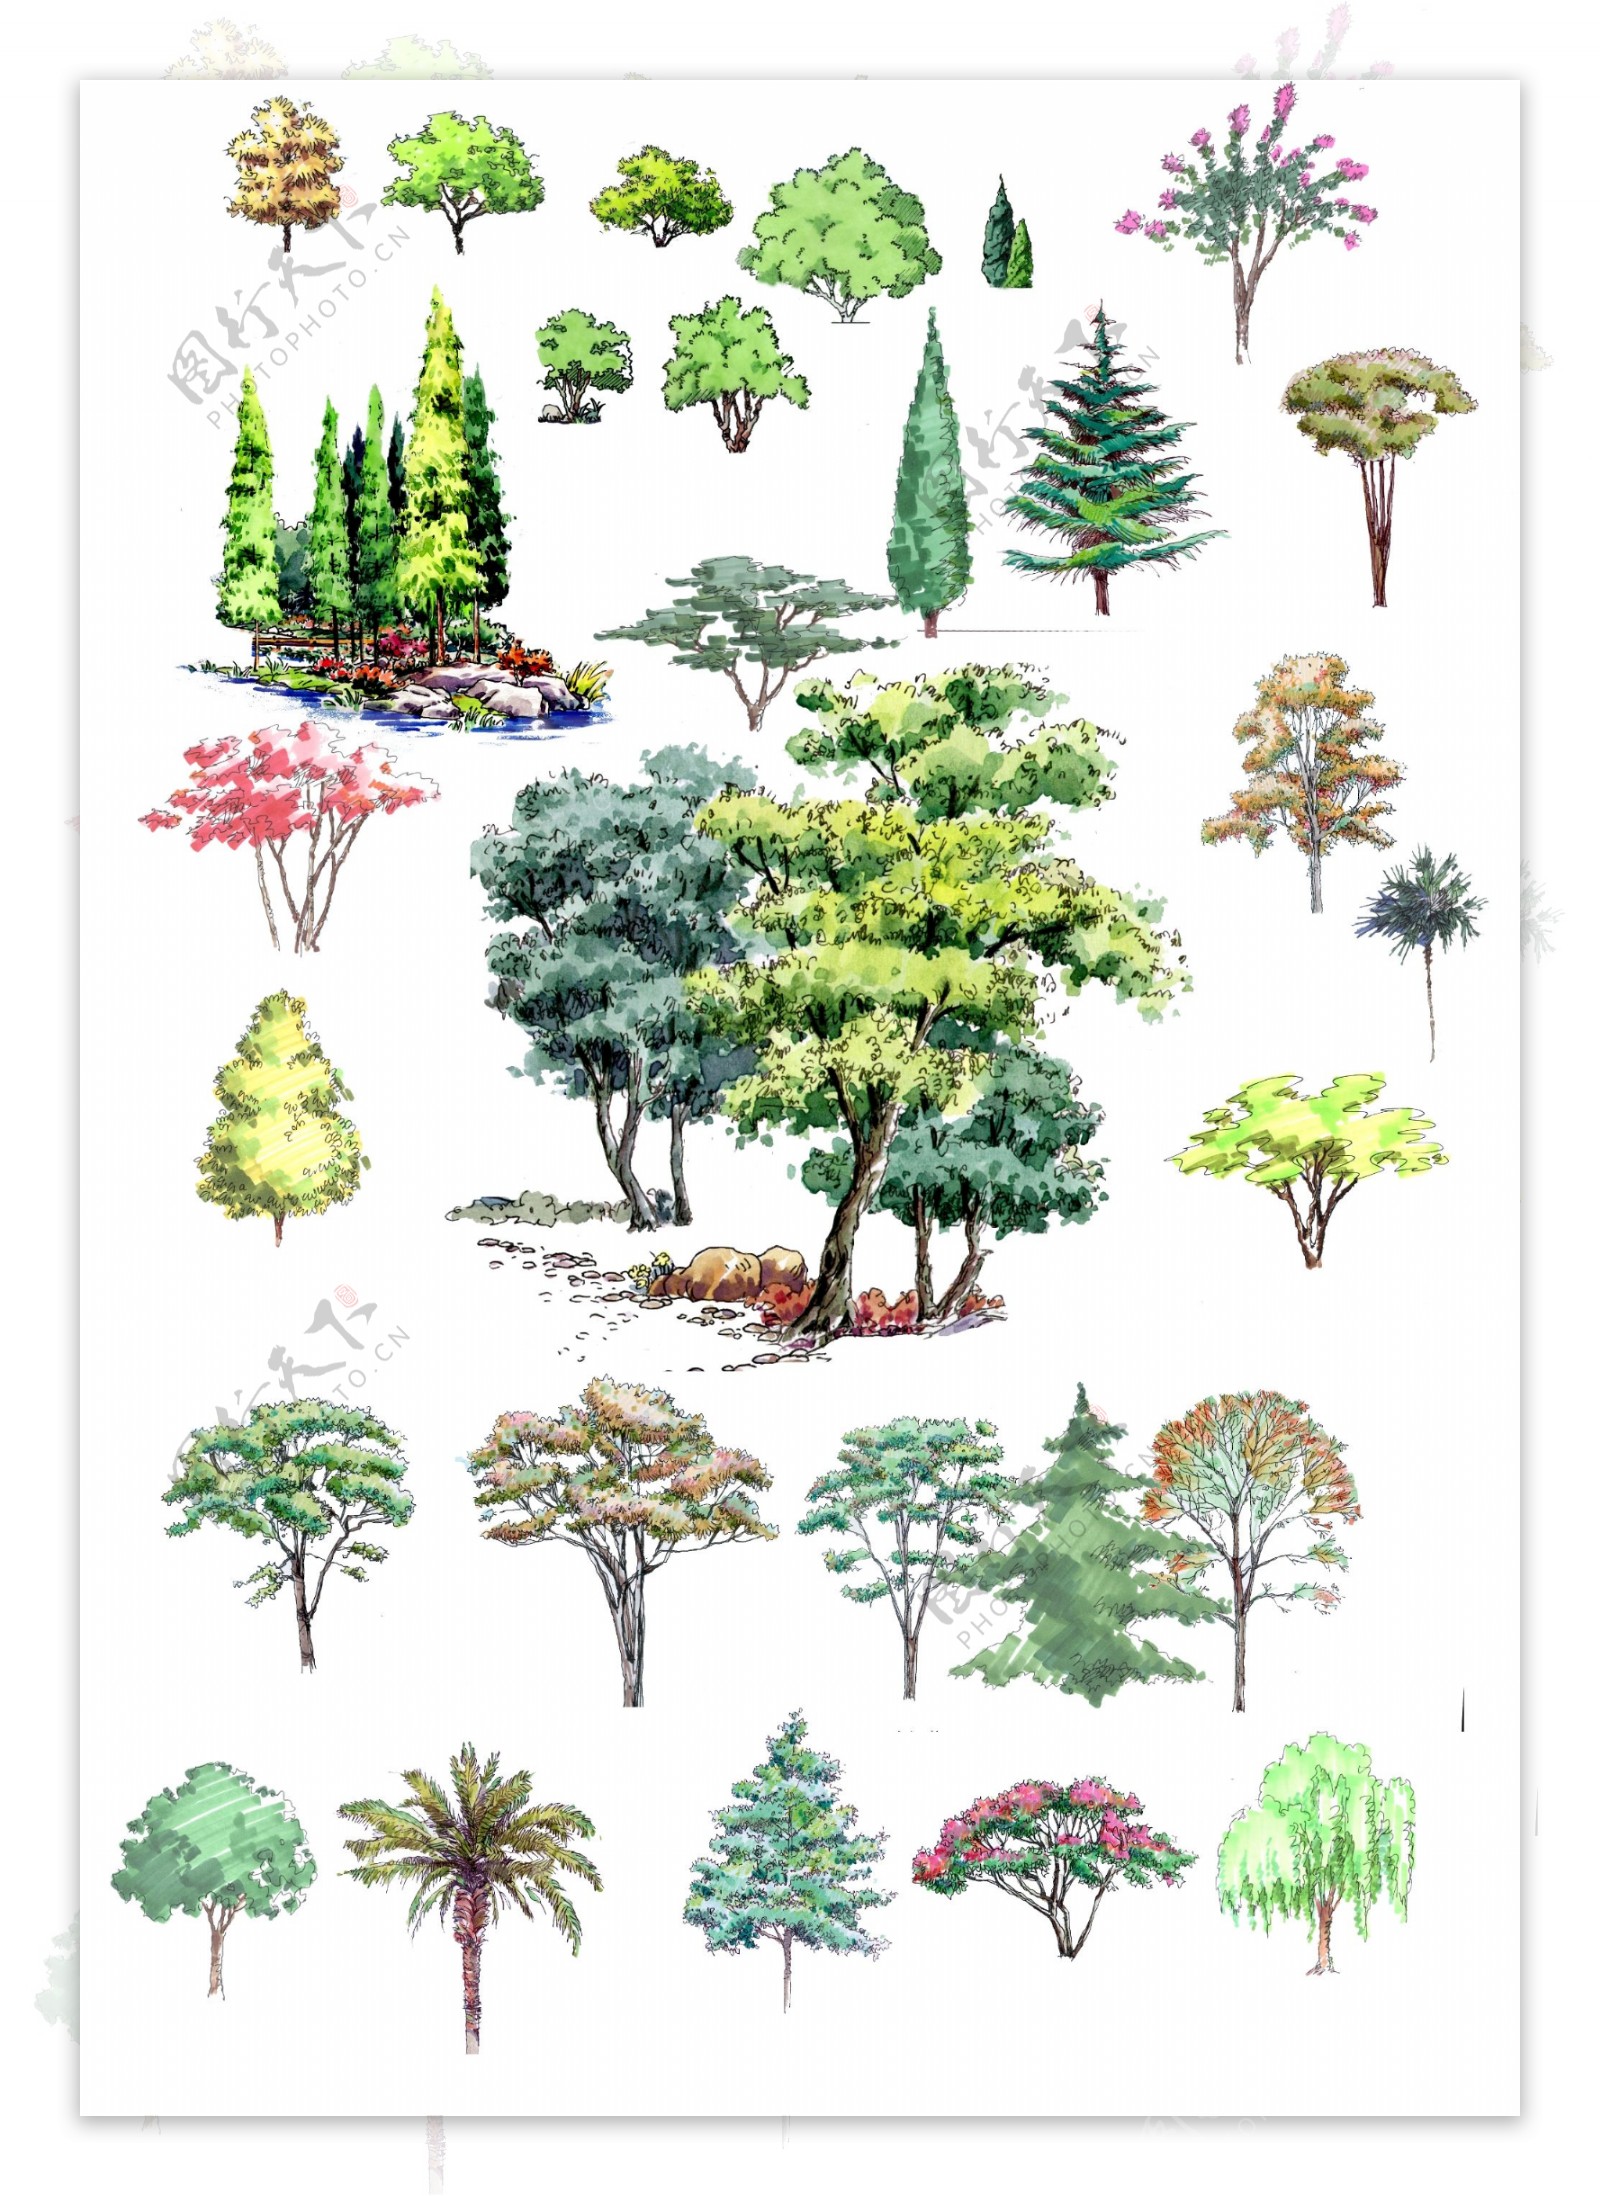 园林景观绿化效果立面图